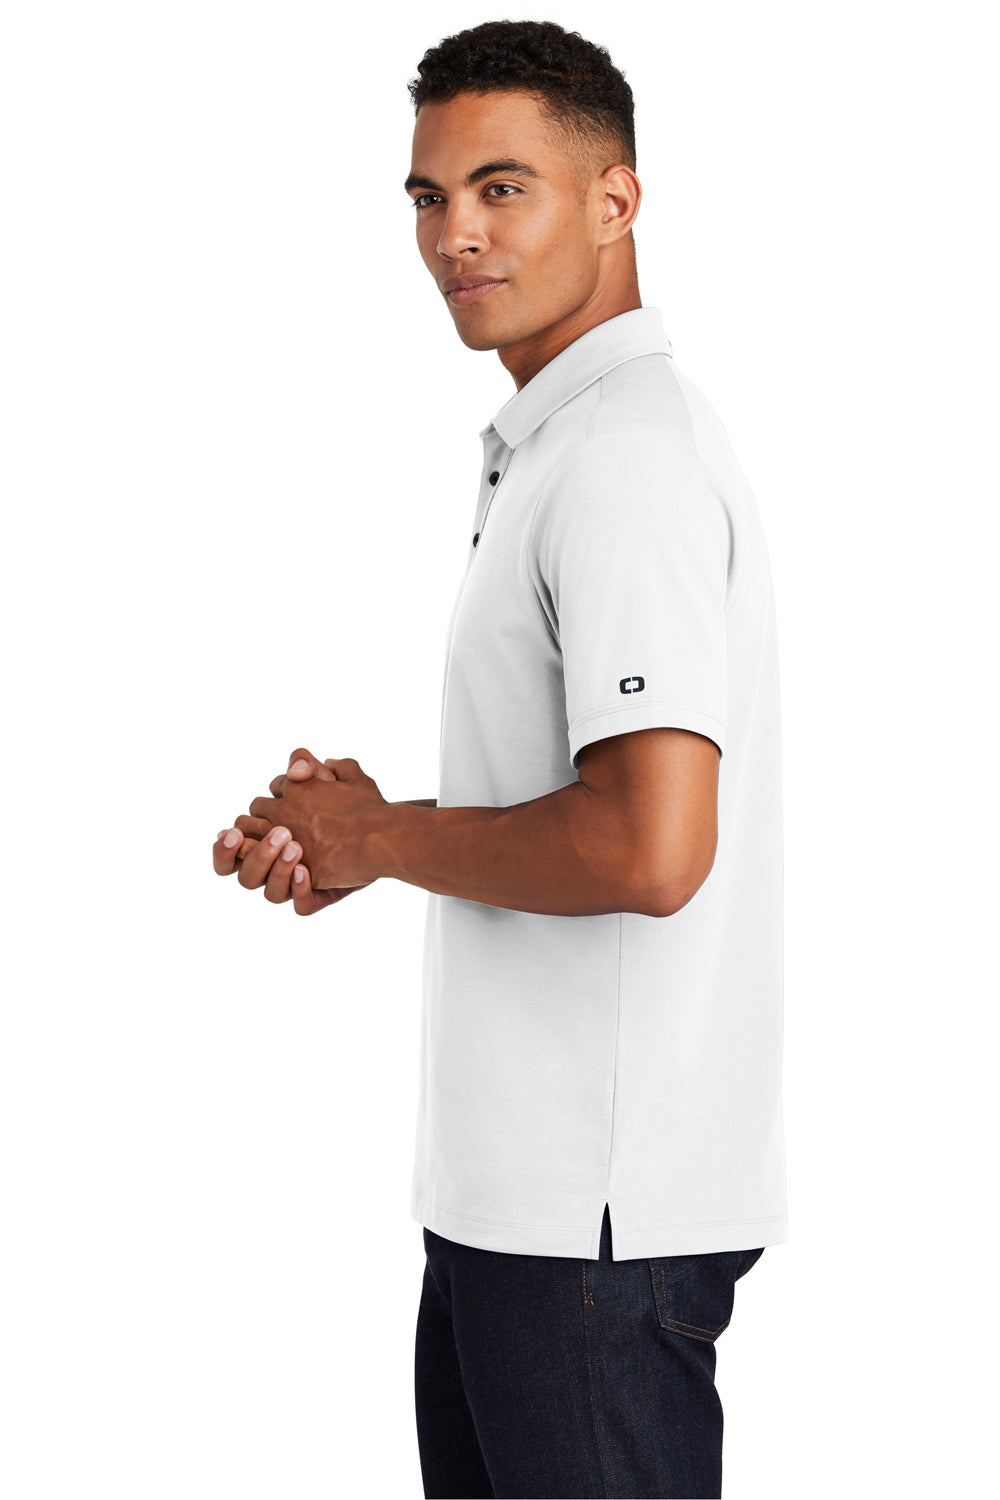 Ogio OG138 Mens Limit Moisture Wicking Short Sleeve Polo Shirt White Side